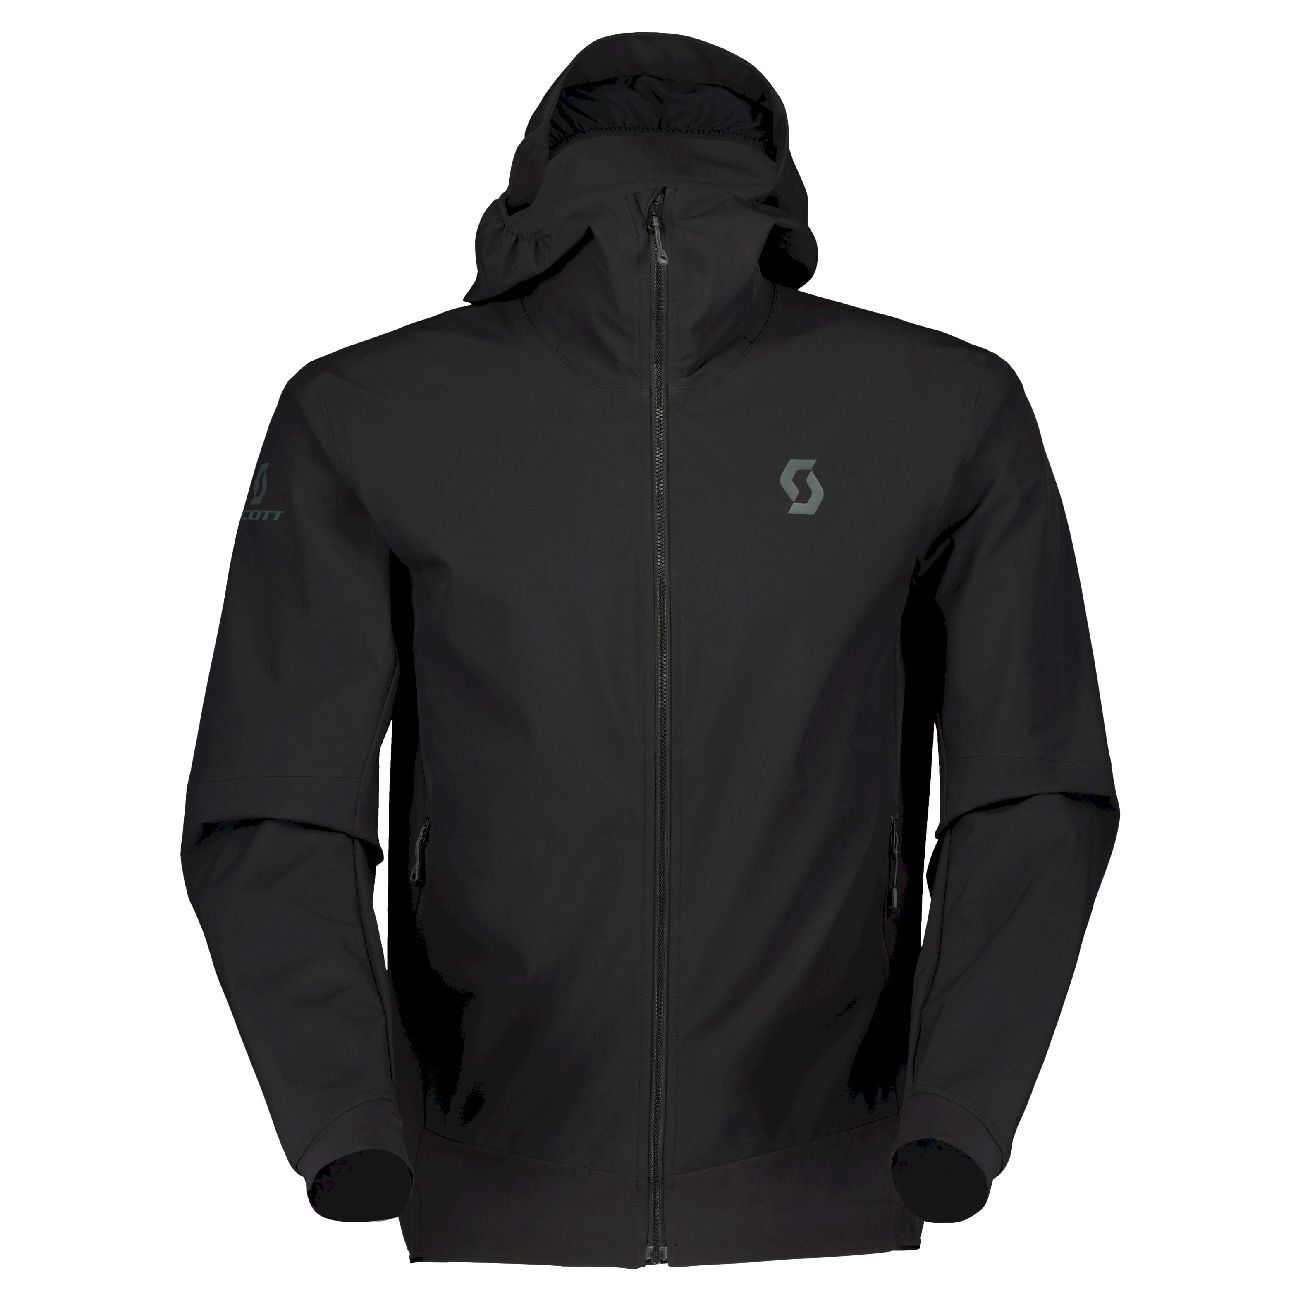 Scott Explorair Hybrid LT Jacket - Ski jacket - Men's